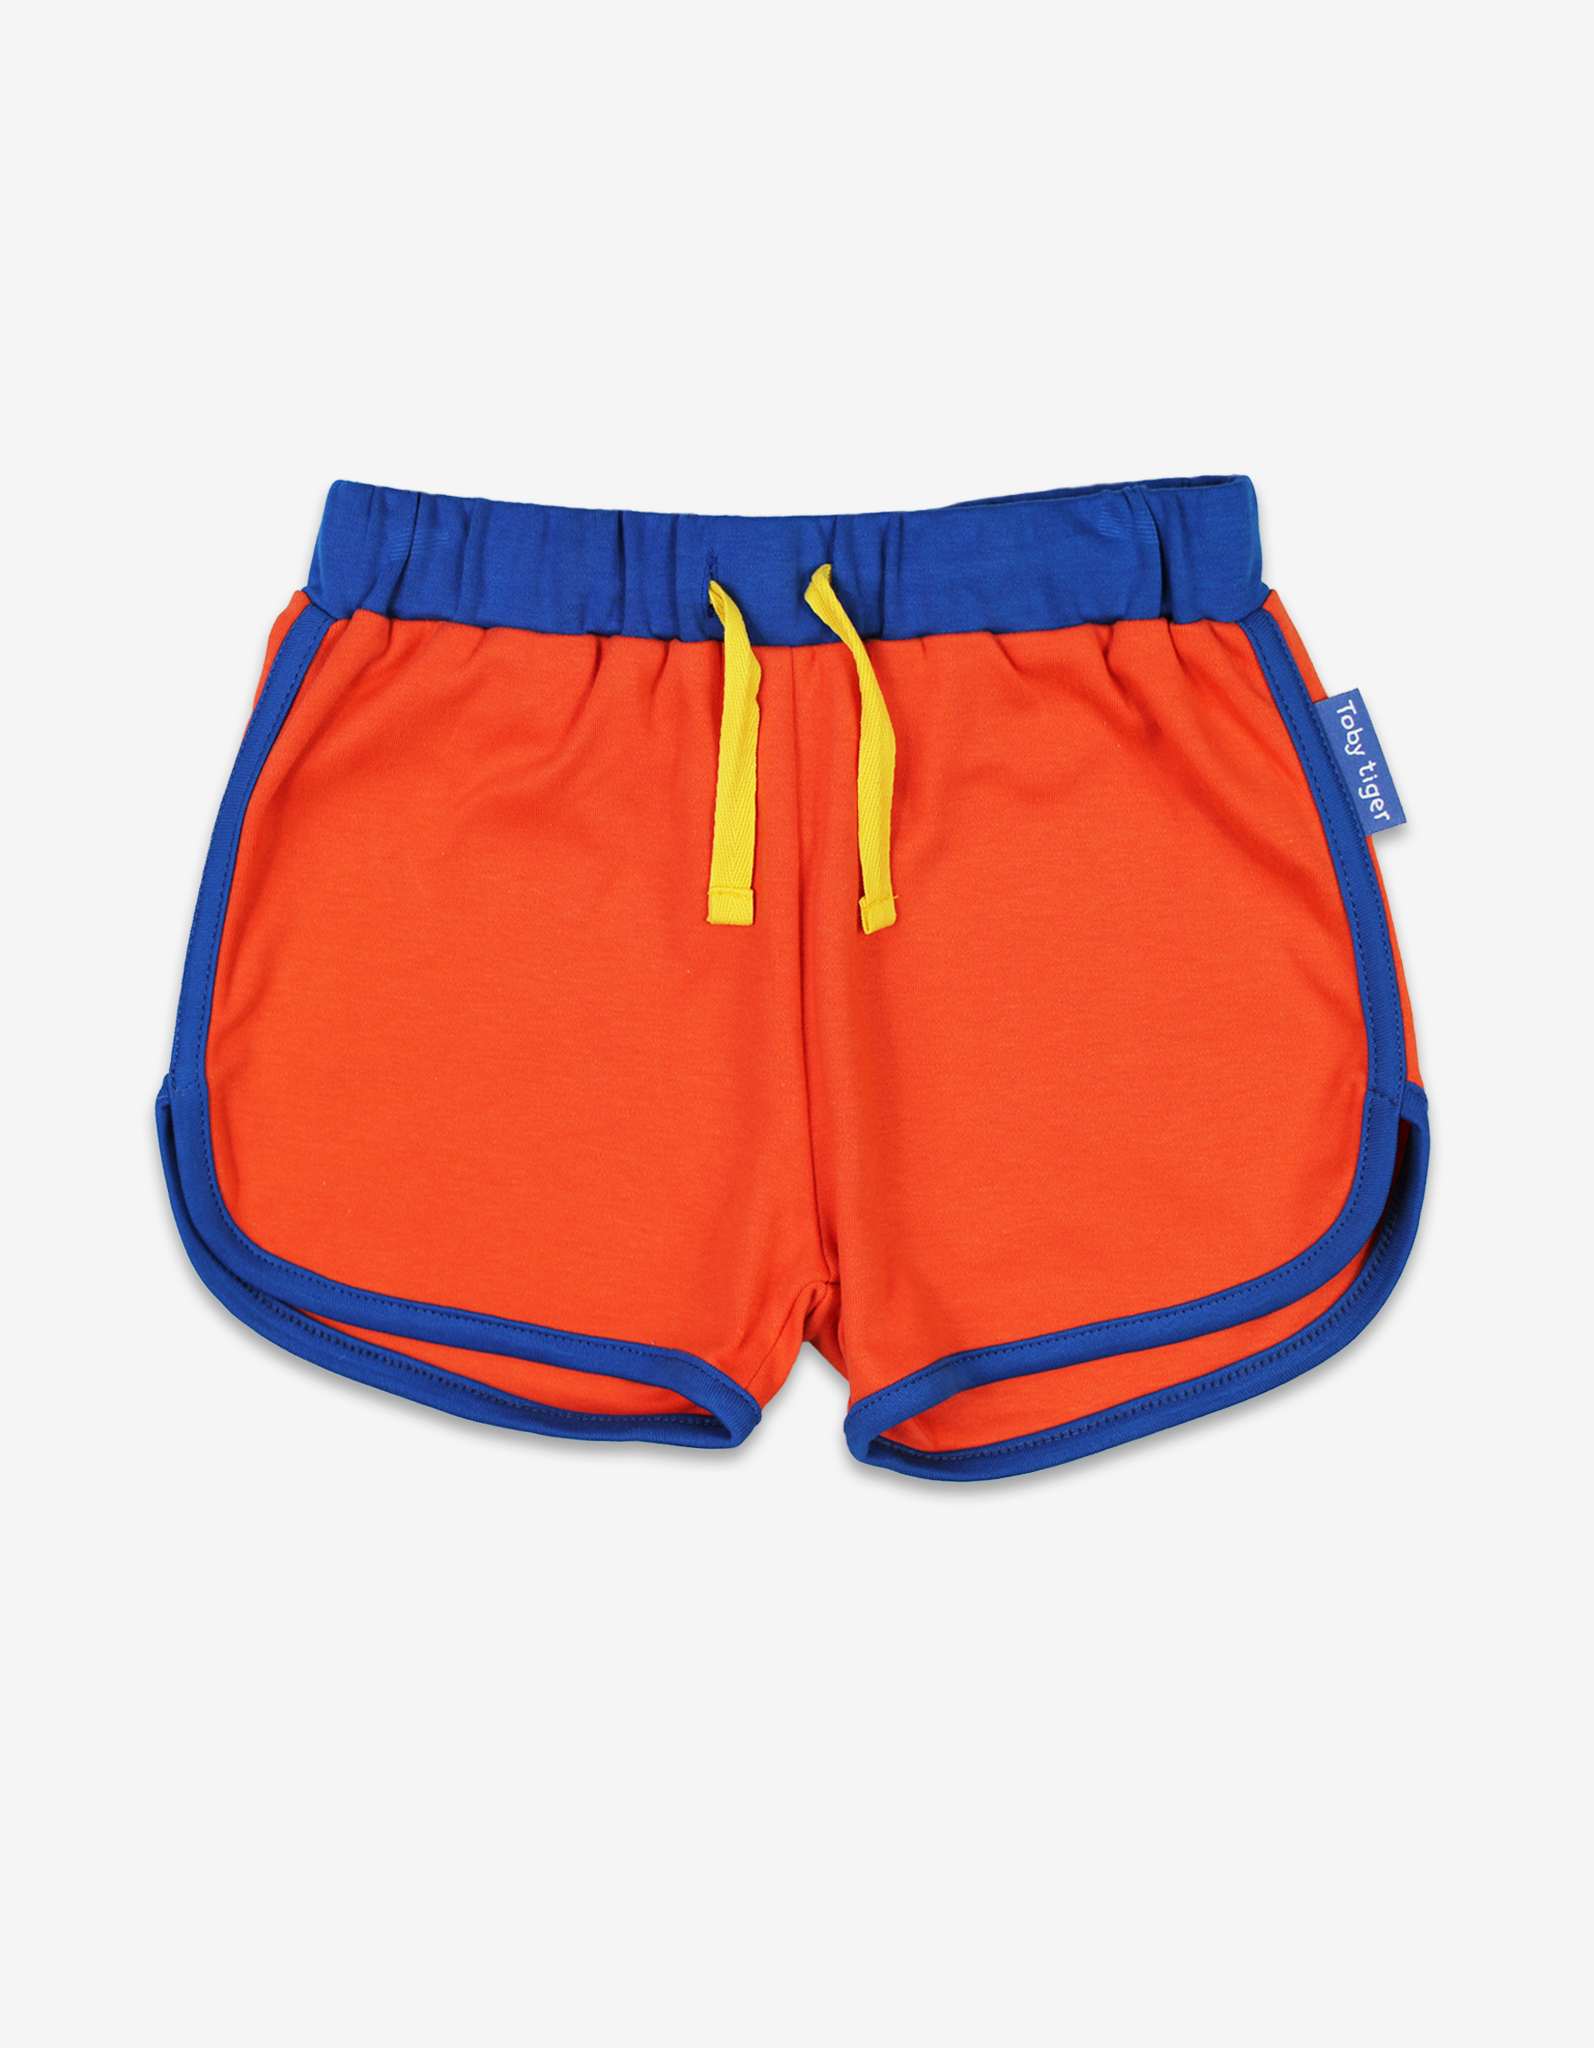 Organic Orange Running Shorts - 2